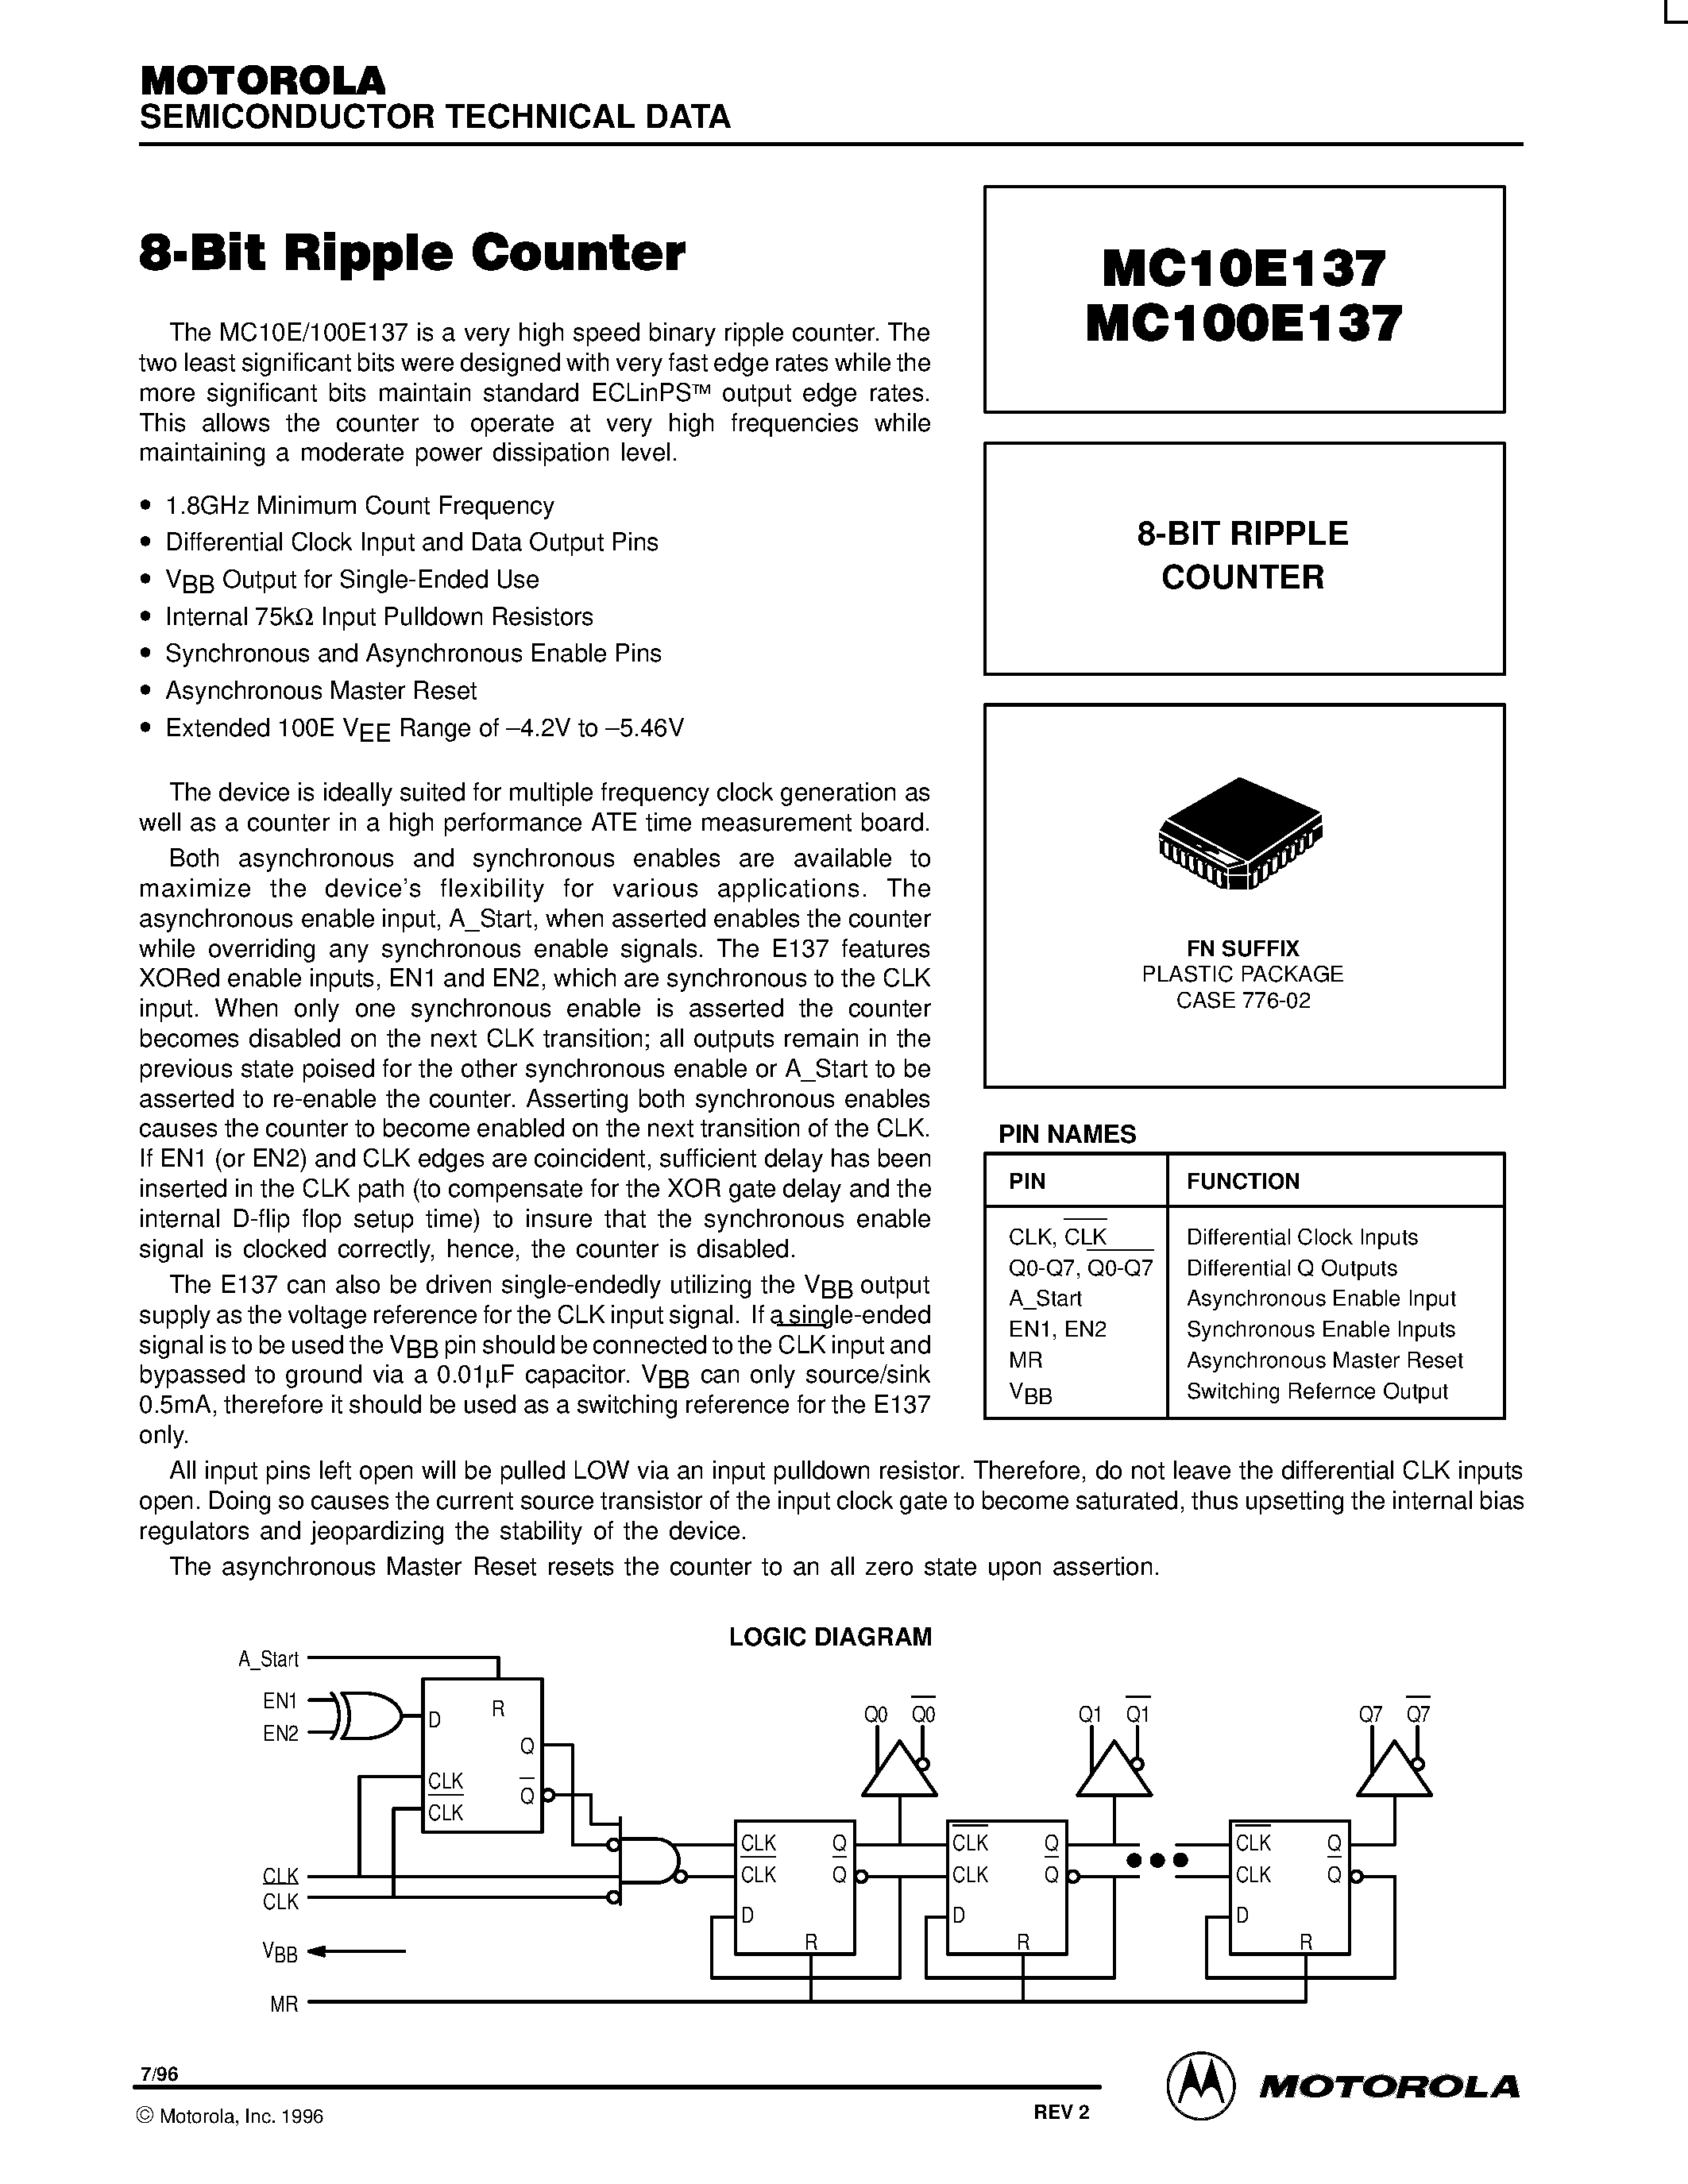 Даташит MC100E137FN - 8-BIT RIPPLE COUNTER страница 1